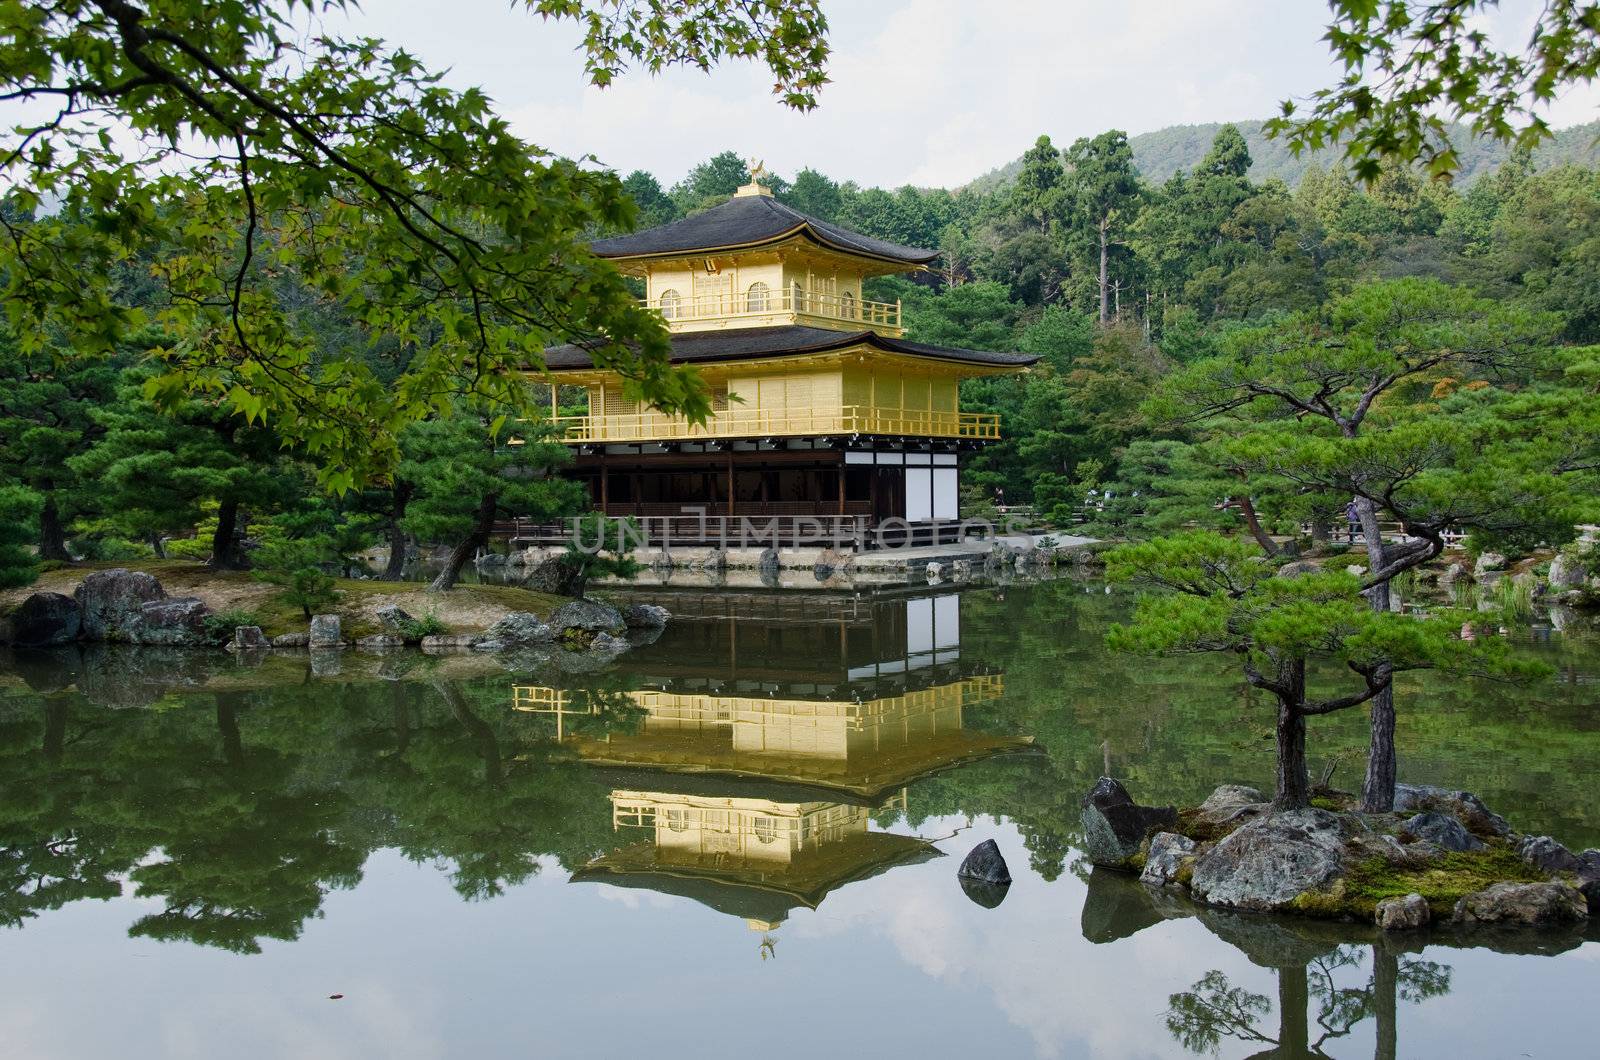 Kinkakuji Temple or The Golden Pavilion in Kyoto - Japan